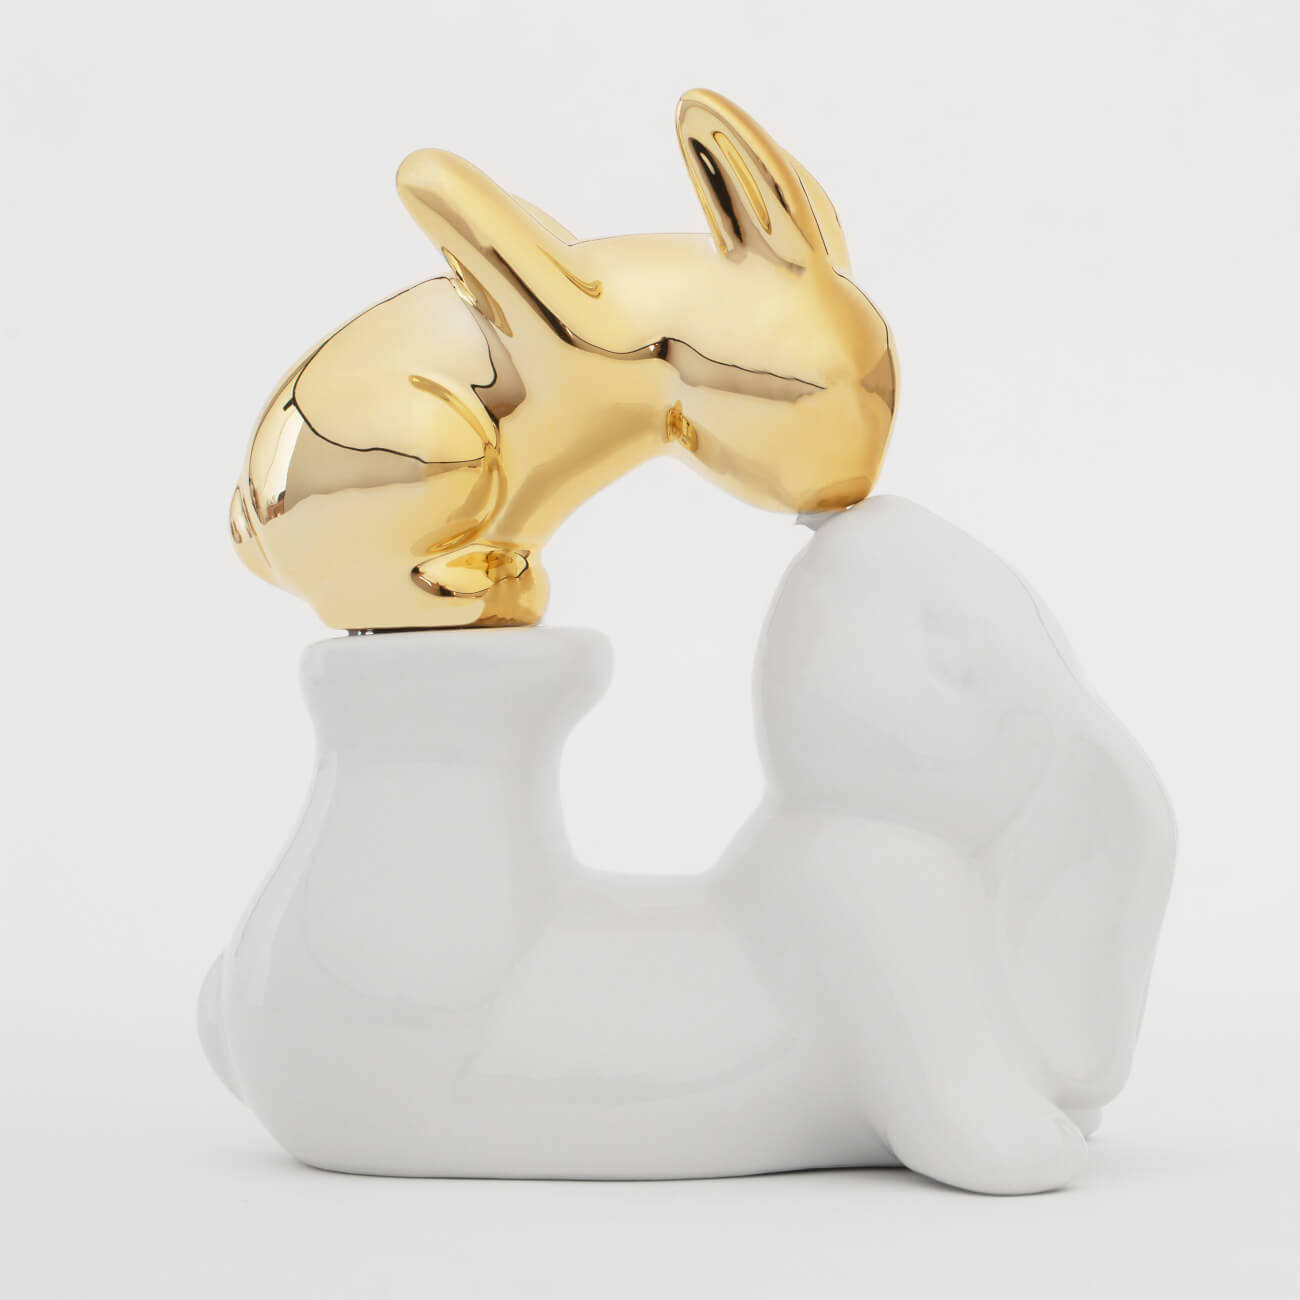 статуэтка 13 см полирезин бело золотистая кролик с очным ожерельем easter gold Статуэтка, 14 см, керамика, бело-золотистая, Крольчиха и крольчонок, Easter gold